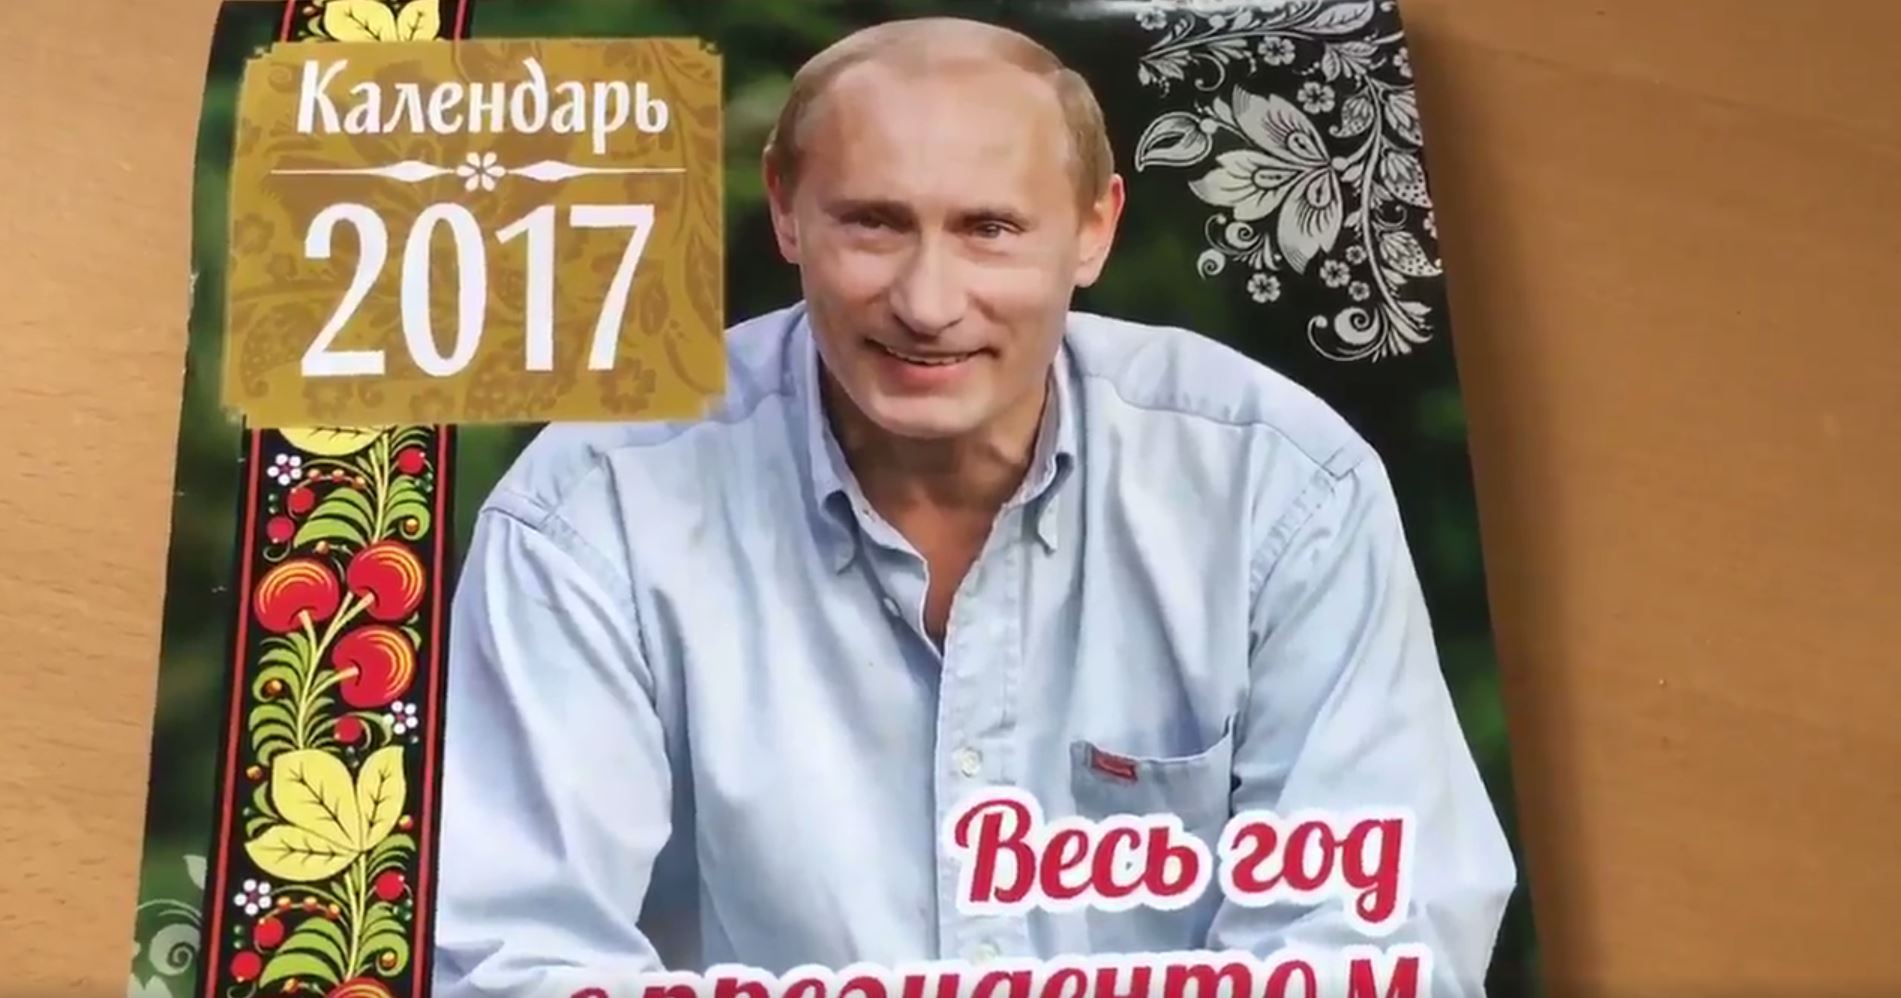 Putin ponavlja za Pahorjem? Putin izdal koledar za leto 2017